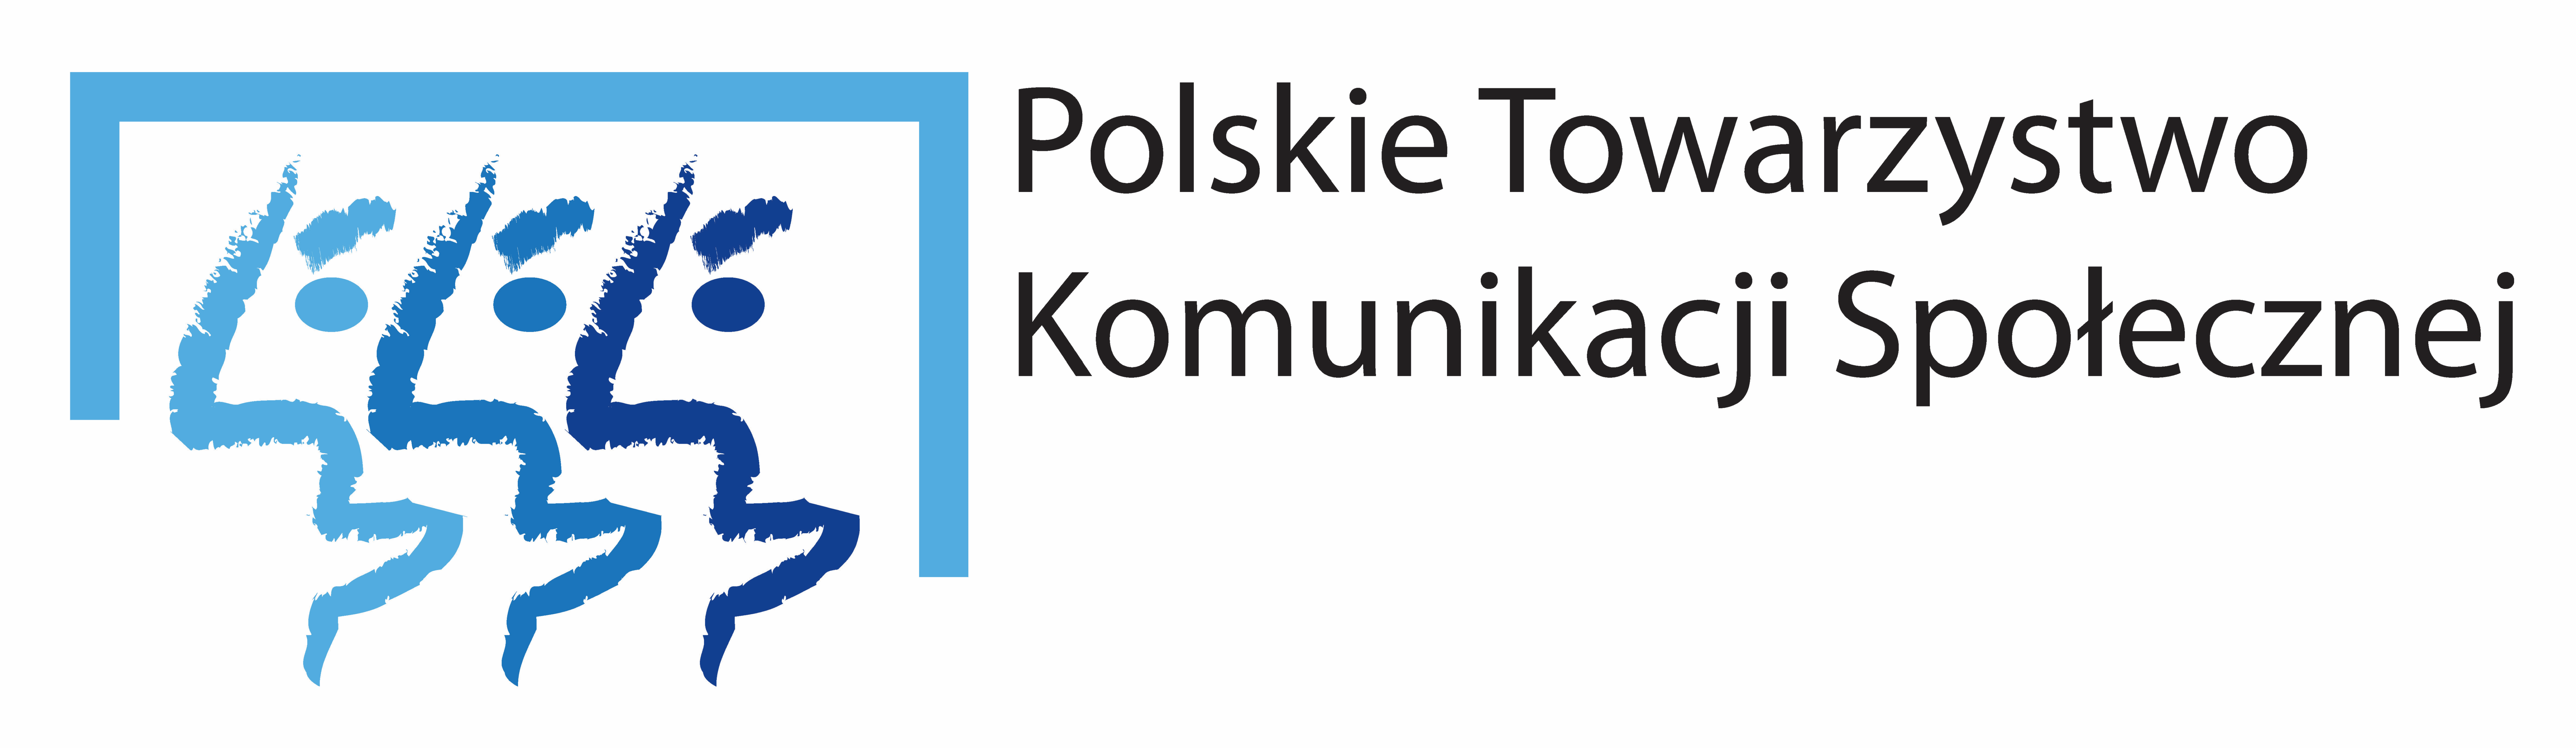 Polskie Towarzystwo Komunikacji Społecznej